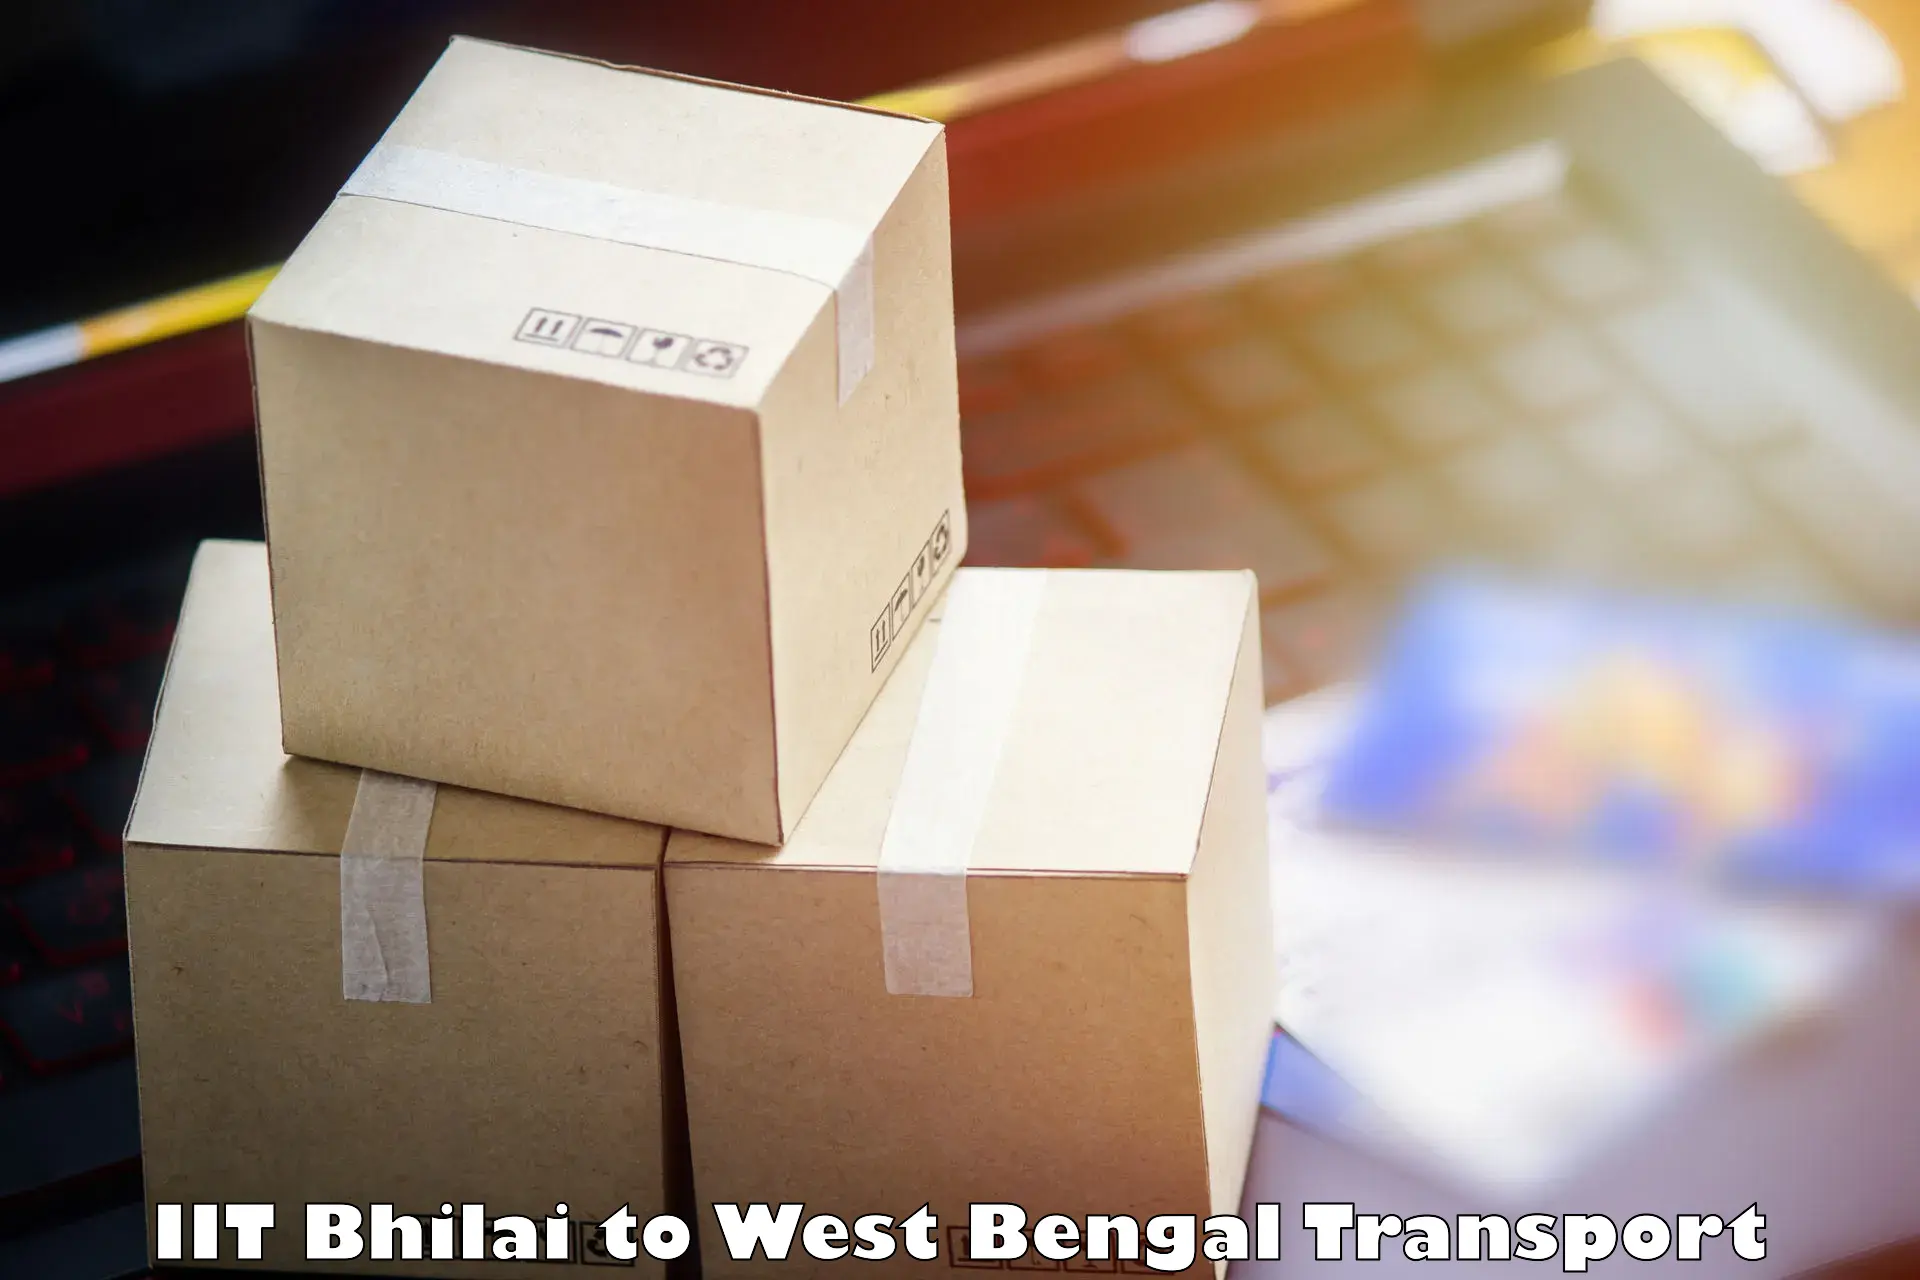 Pick up transport service IIT Bhilai to Gopalnagar